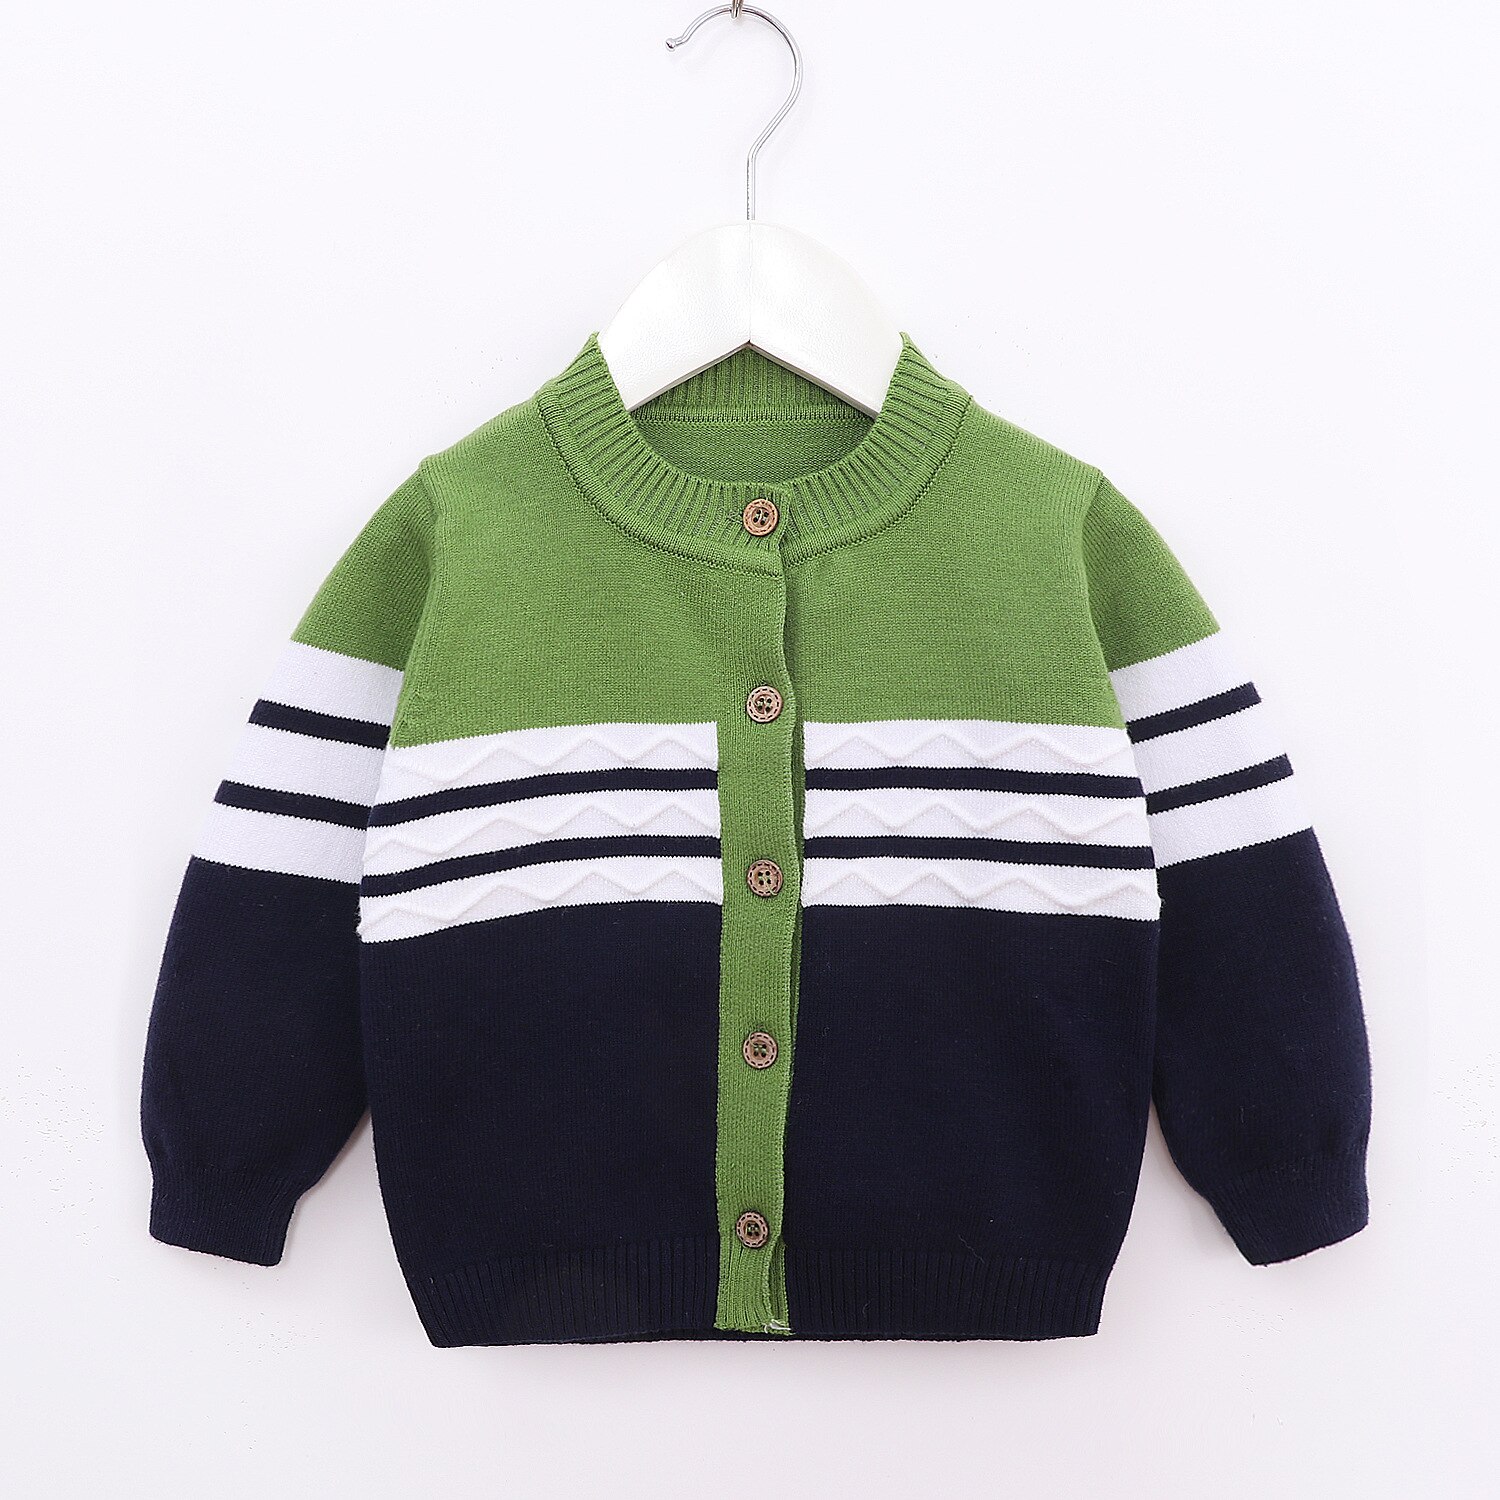 Nyfødte spædbarn børn baby dreng pige sweater langærmet uldfrakke forår efterår afslappet varm strikket cardigan toppe overtøjstøj: Grøn / Nyfødt